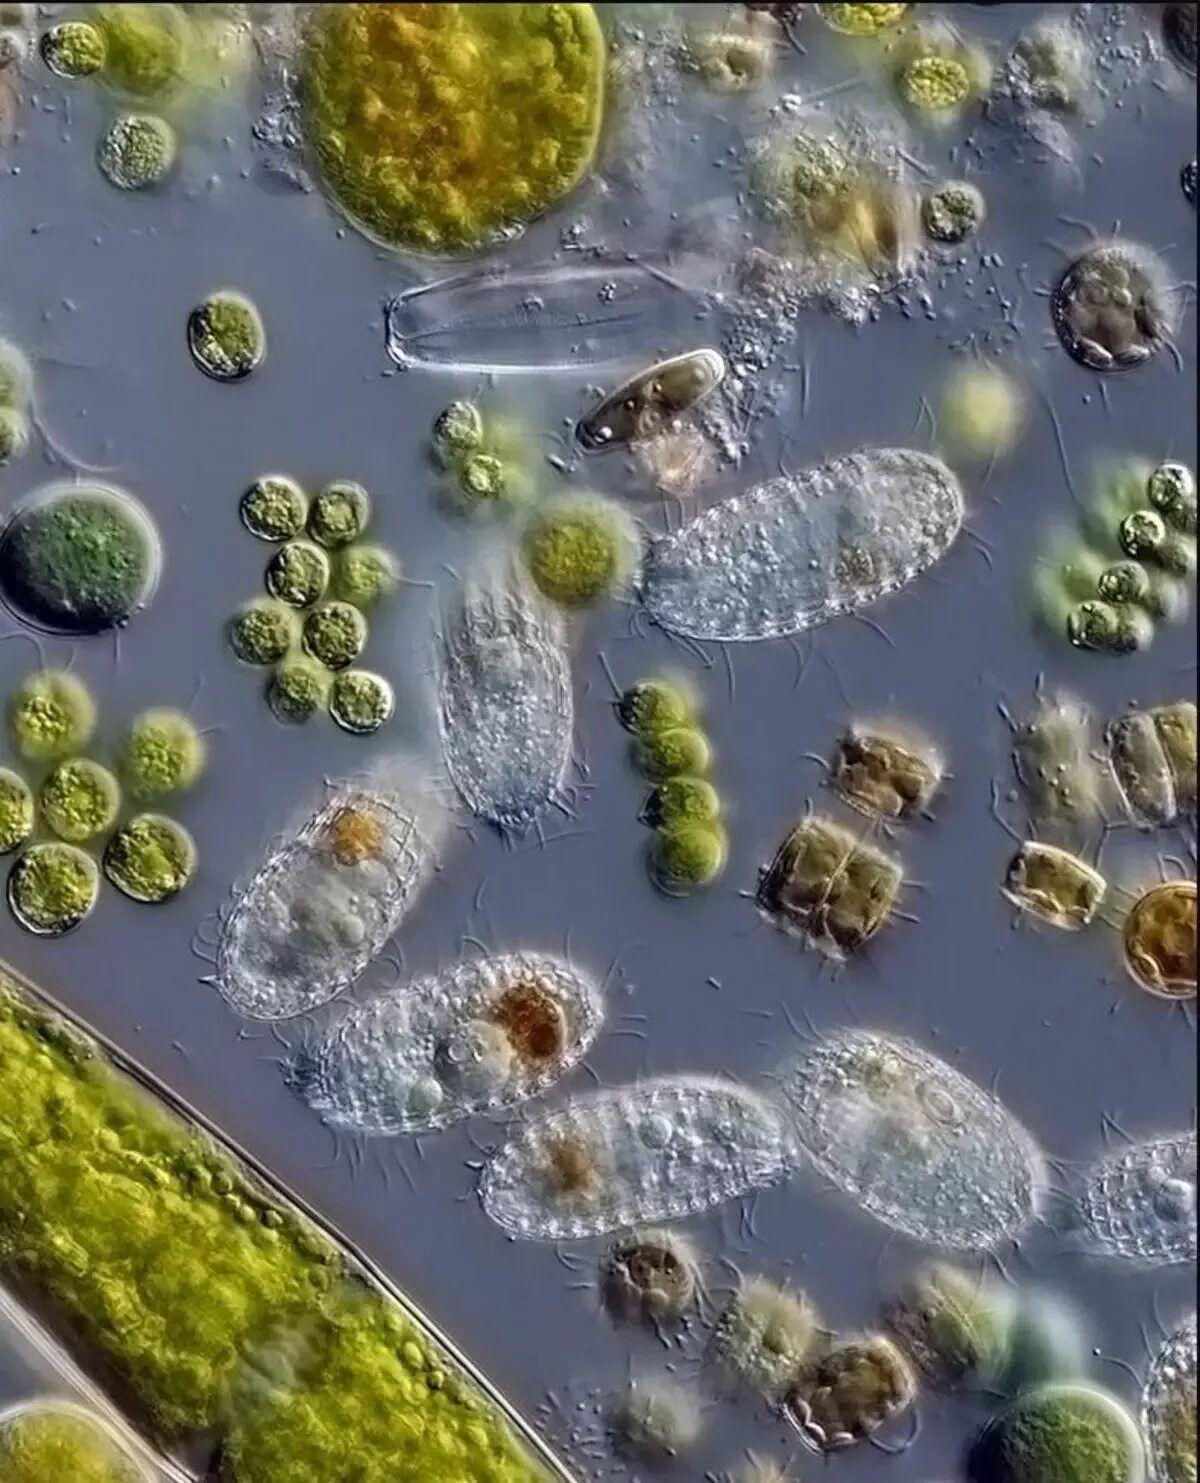 Бактерии в питьевой воде. Бактерии в воде под микроскопом. Микроорганизмы в воде под микроскопом. Микробы в капле воды под микроскопом. Бактерии под микроскопом.